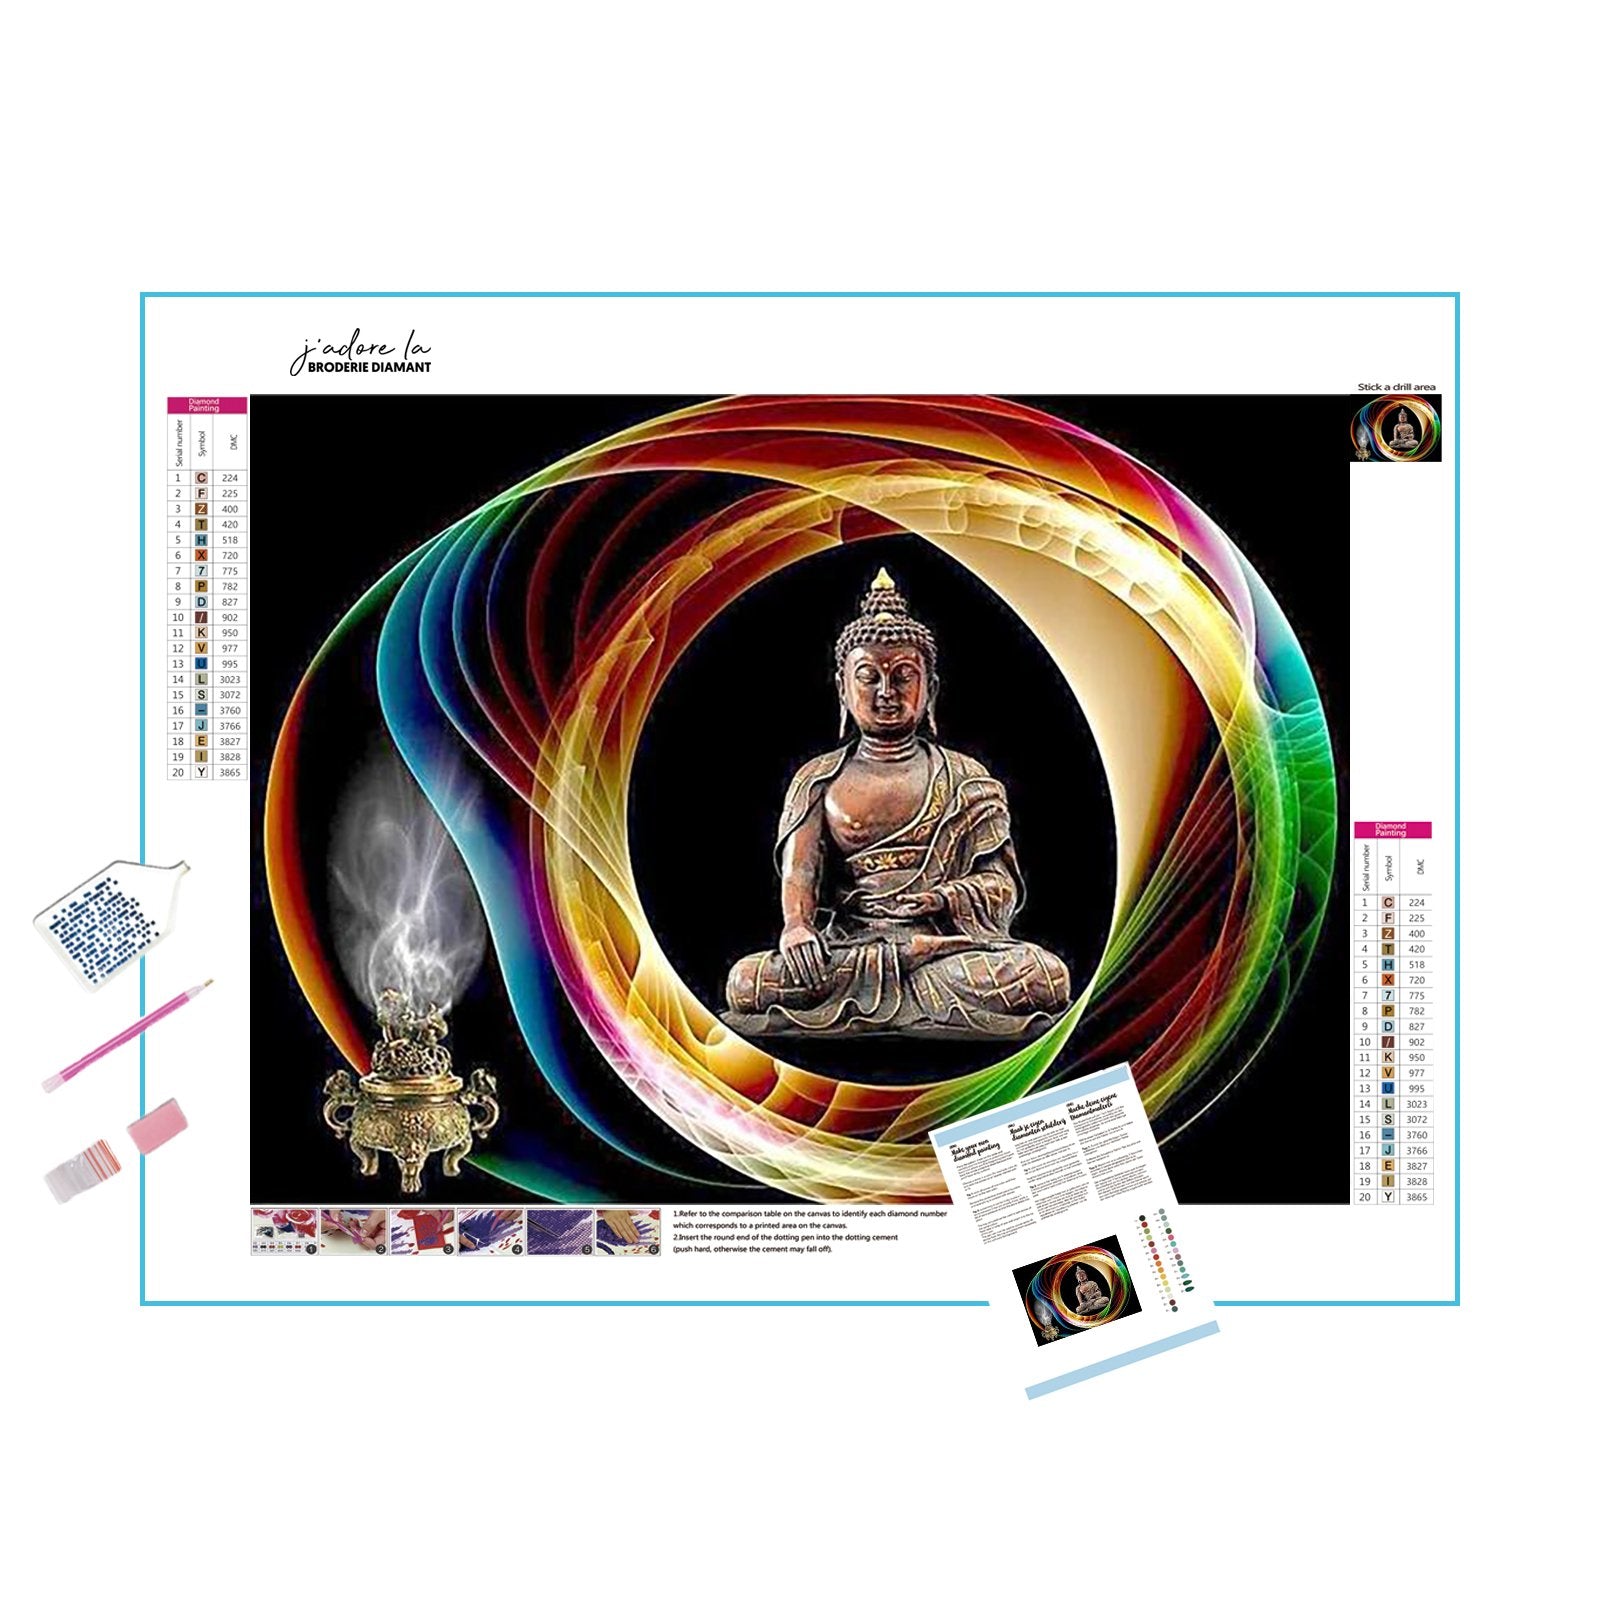 Buddha amidst a spiritual aura, embodying enlightenment and cosmic harmony. Buddha In Spiritual Sphere - Diamondartlove